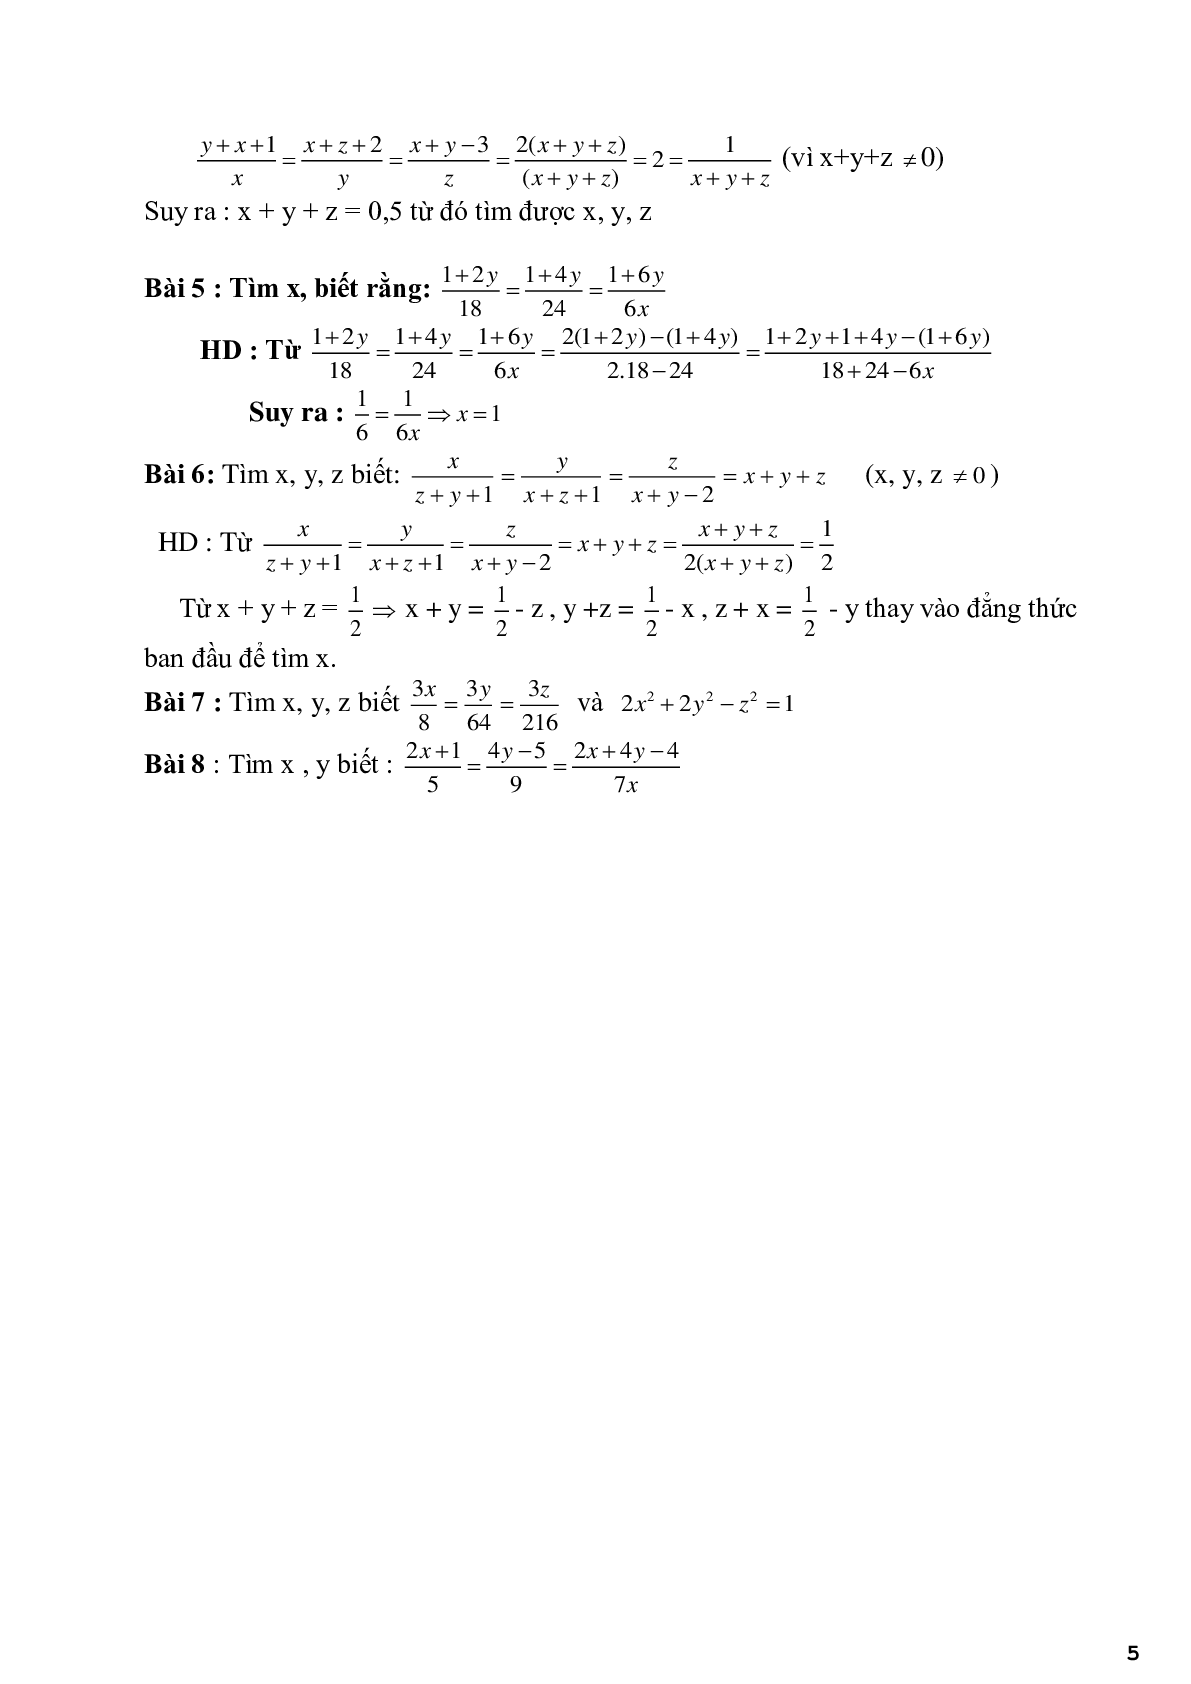 Chuyên đề 2 - Bài toán về tính chất của dãy tỉ số bằng nhau - có đáp án (trang 5)